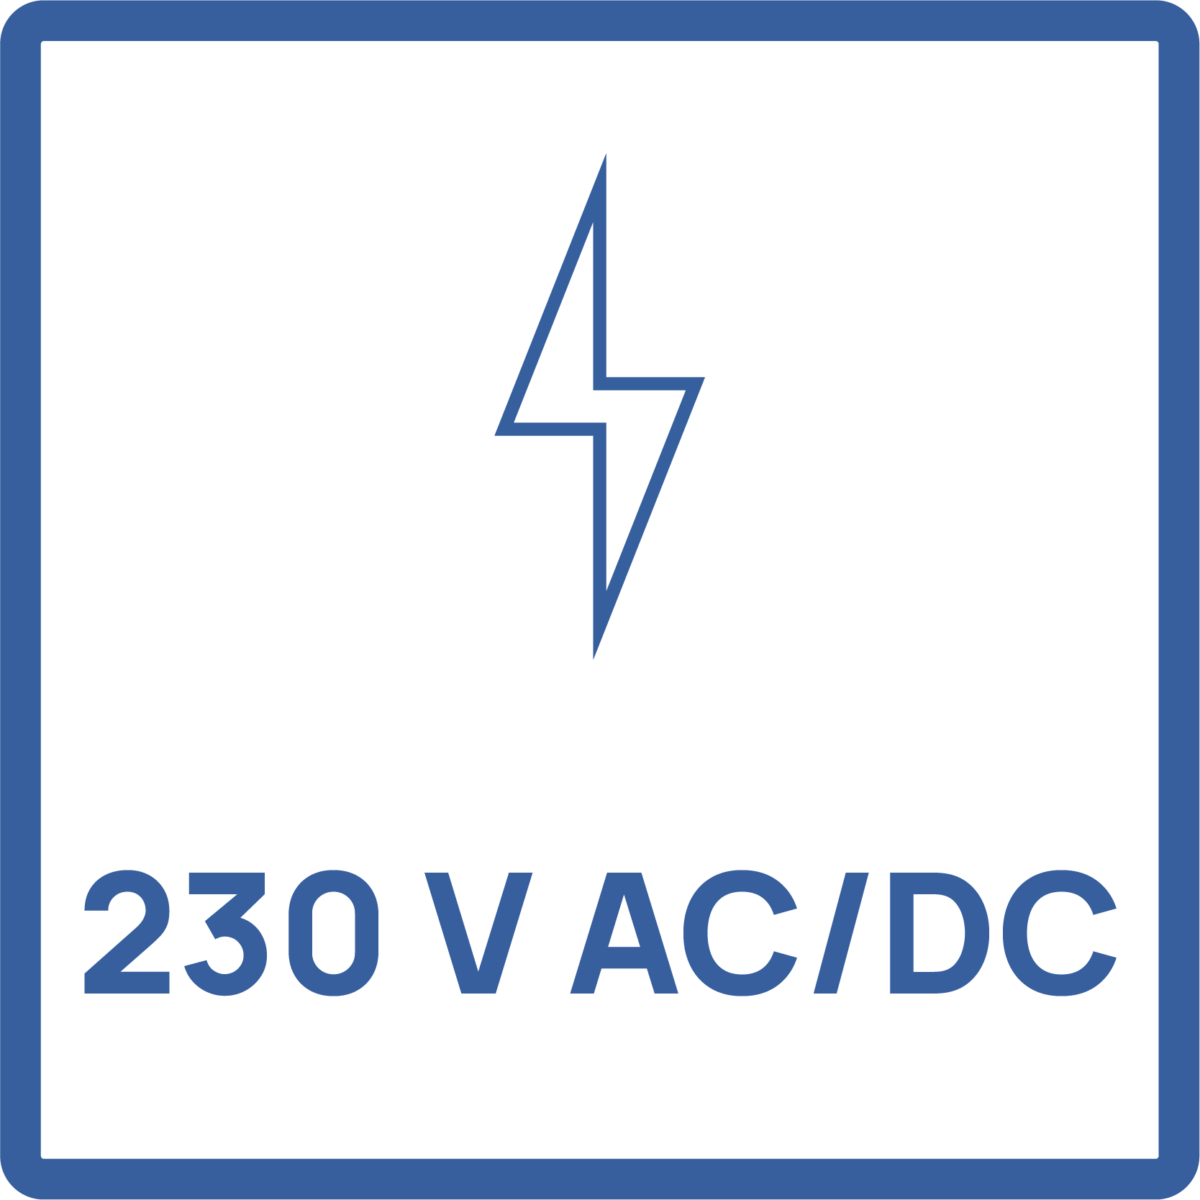 Pictogramme tension d'alimentation de l'appareil : 230V AC/DC